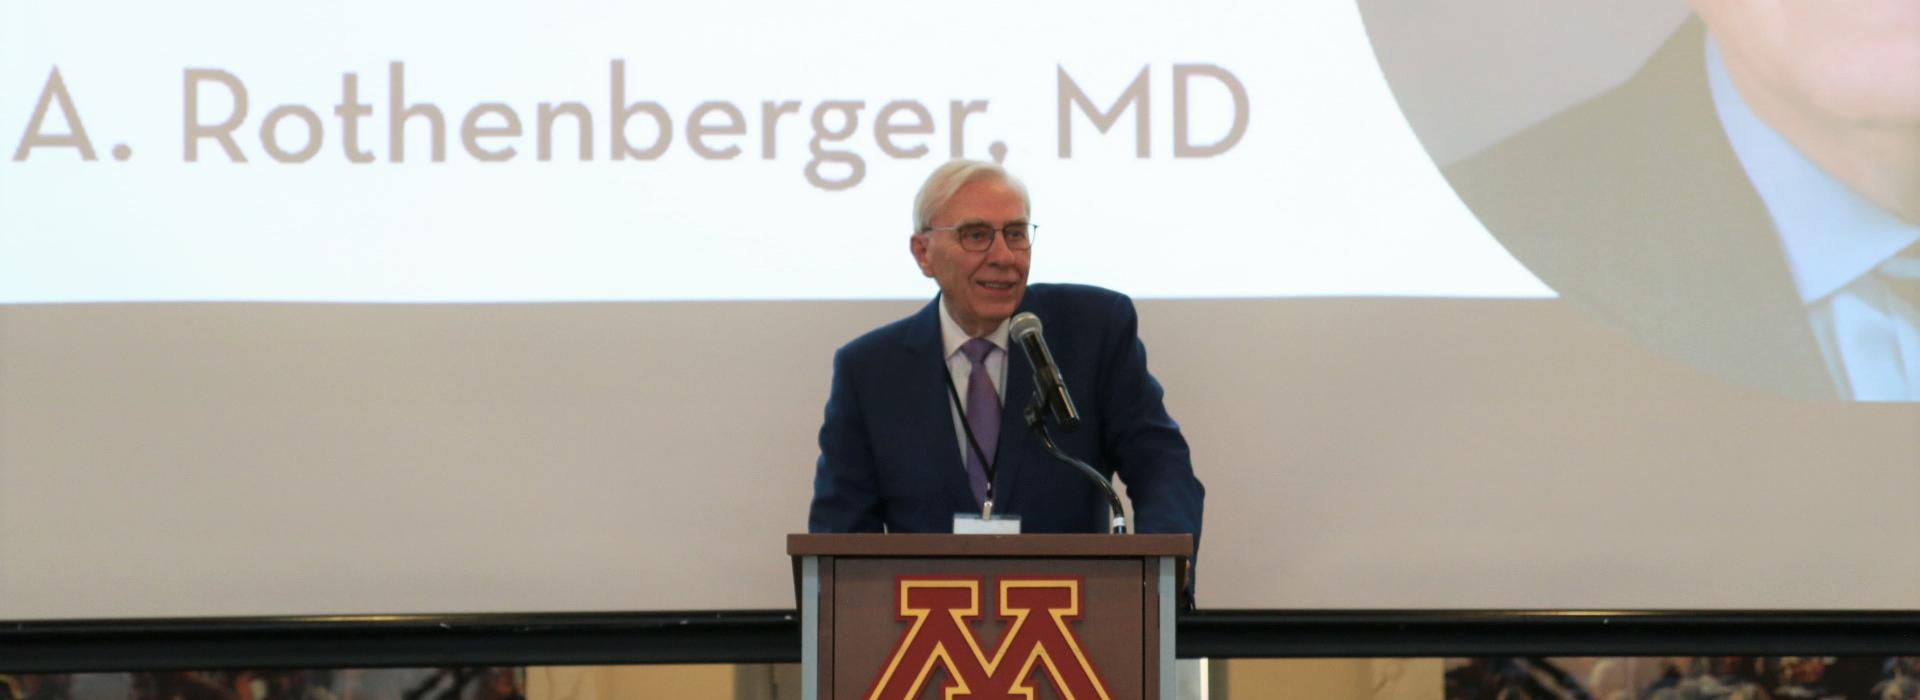 Dr. Rothenberger